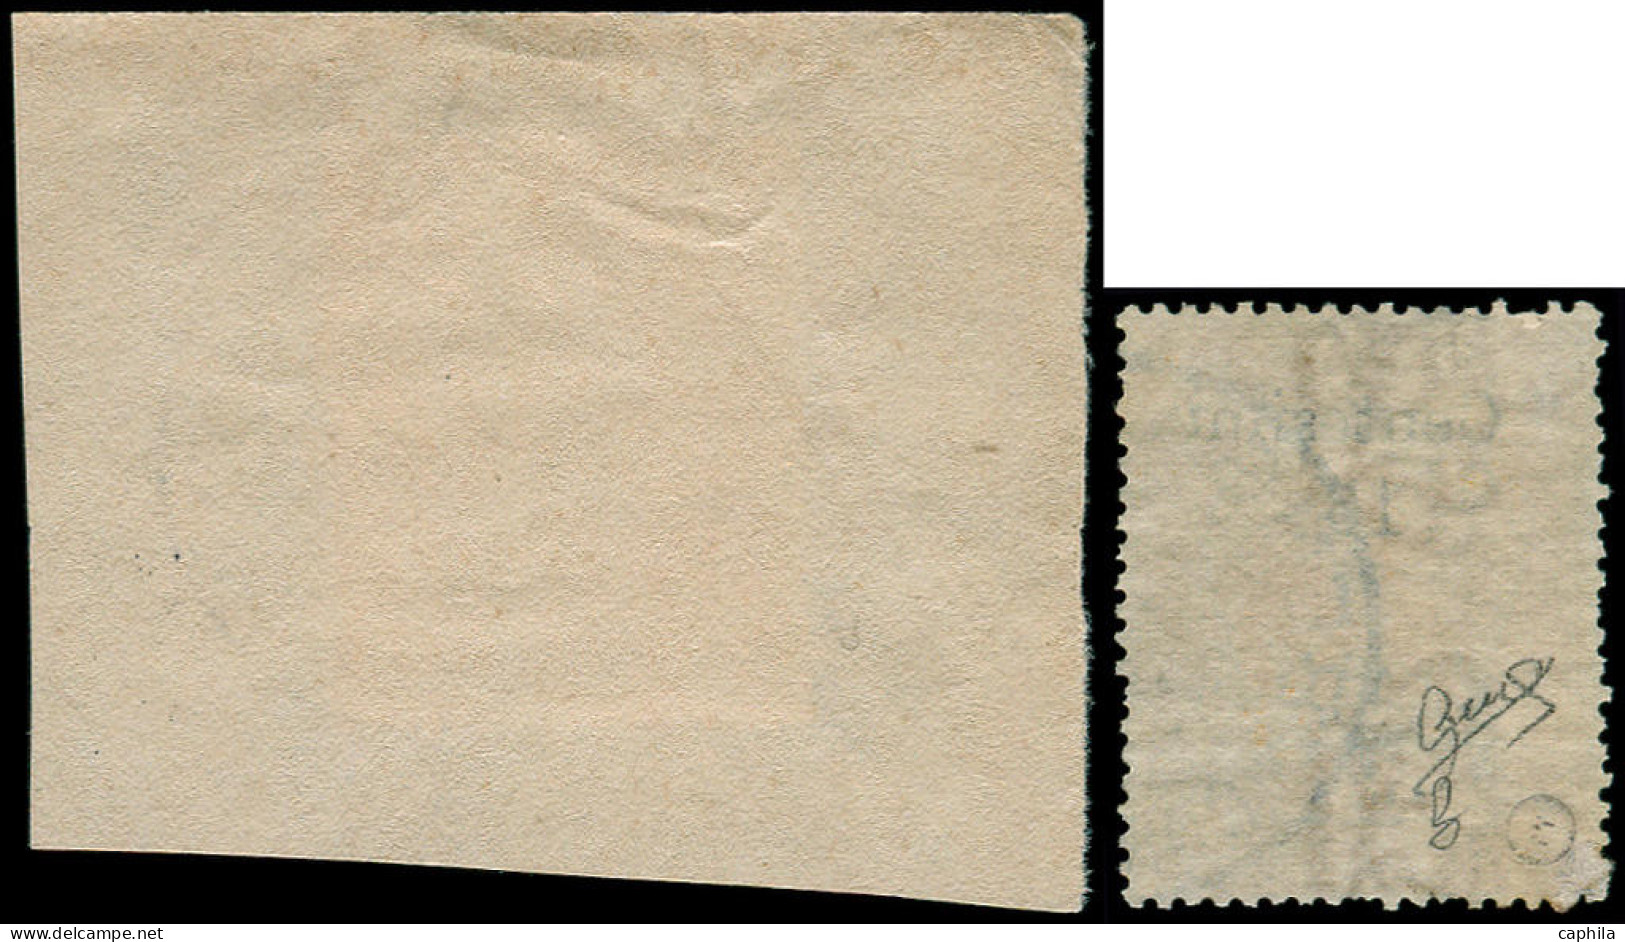 SOMALIE ITALIENNE Poste O - 8/9, Certificat Biondi, 9 Sur Fragment: Timbres De 1903 Surchargés (Sas. 8/9) - Cote: 2200 - Somalia